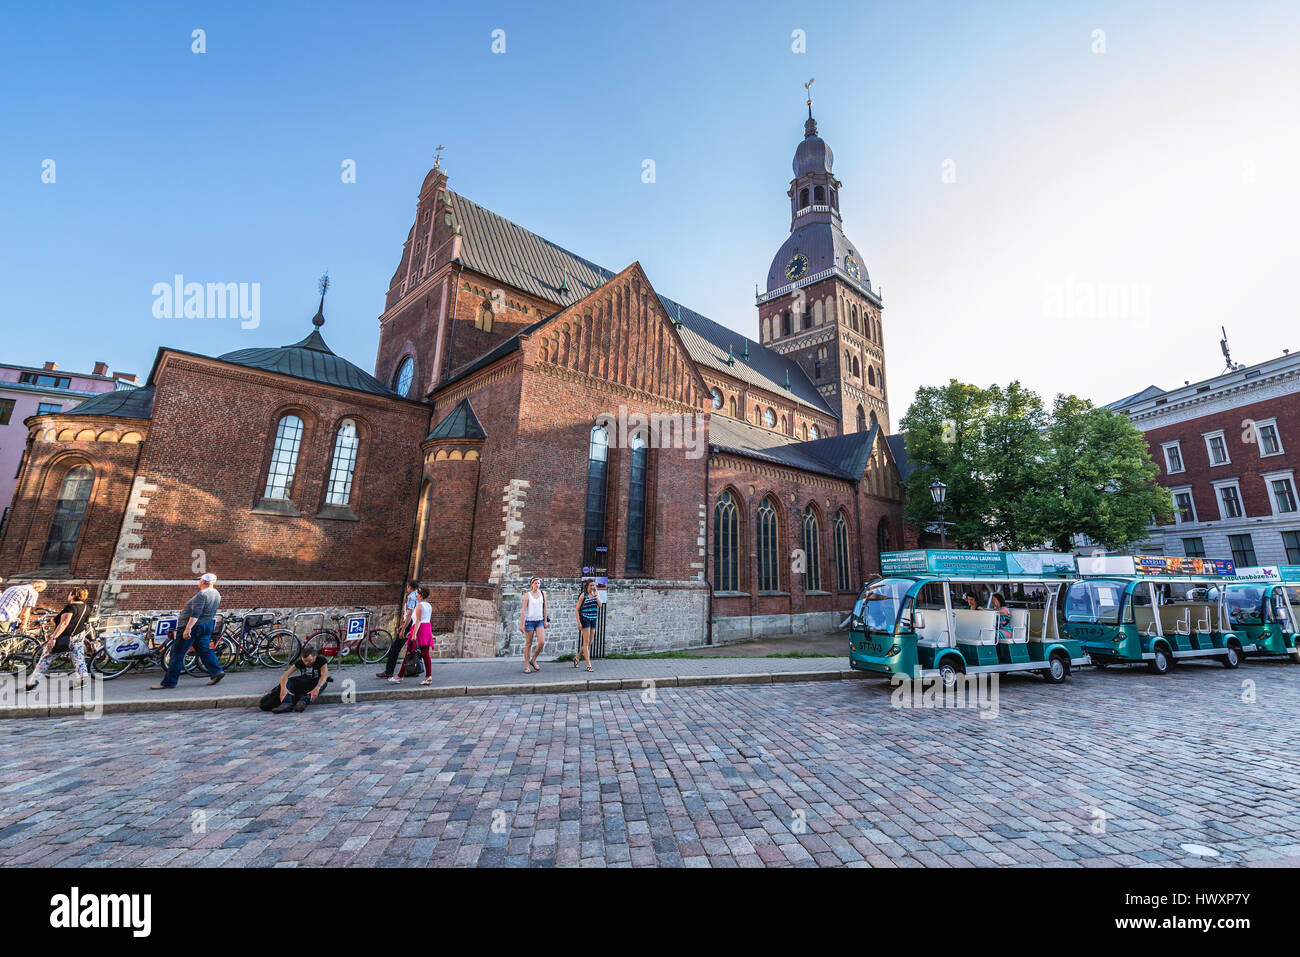 Dom zu Riga am Domplatz, Altstadt von Riga, Hauptstadt der Republik Lettland Stockfoto